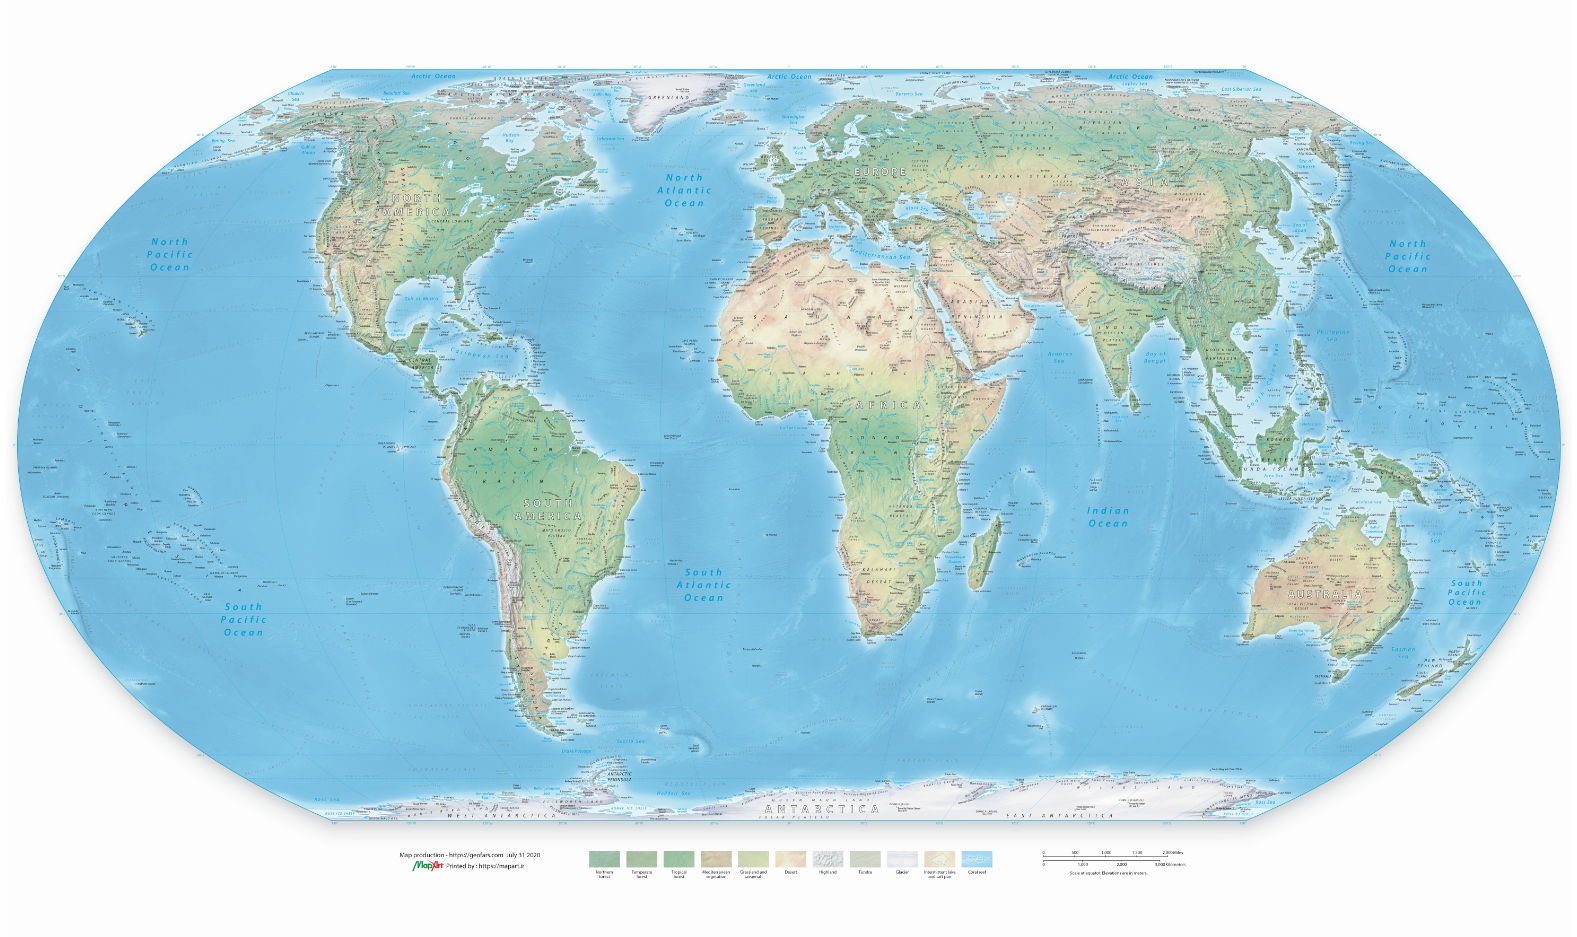 نقشه طبیعی جهان